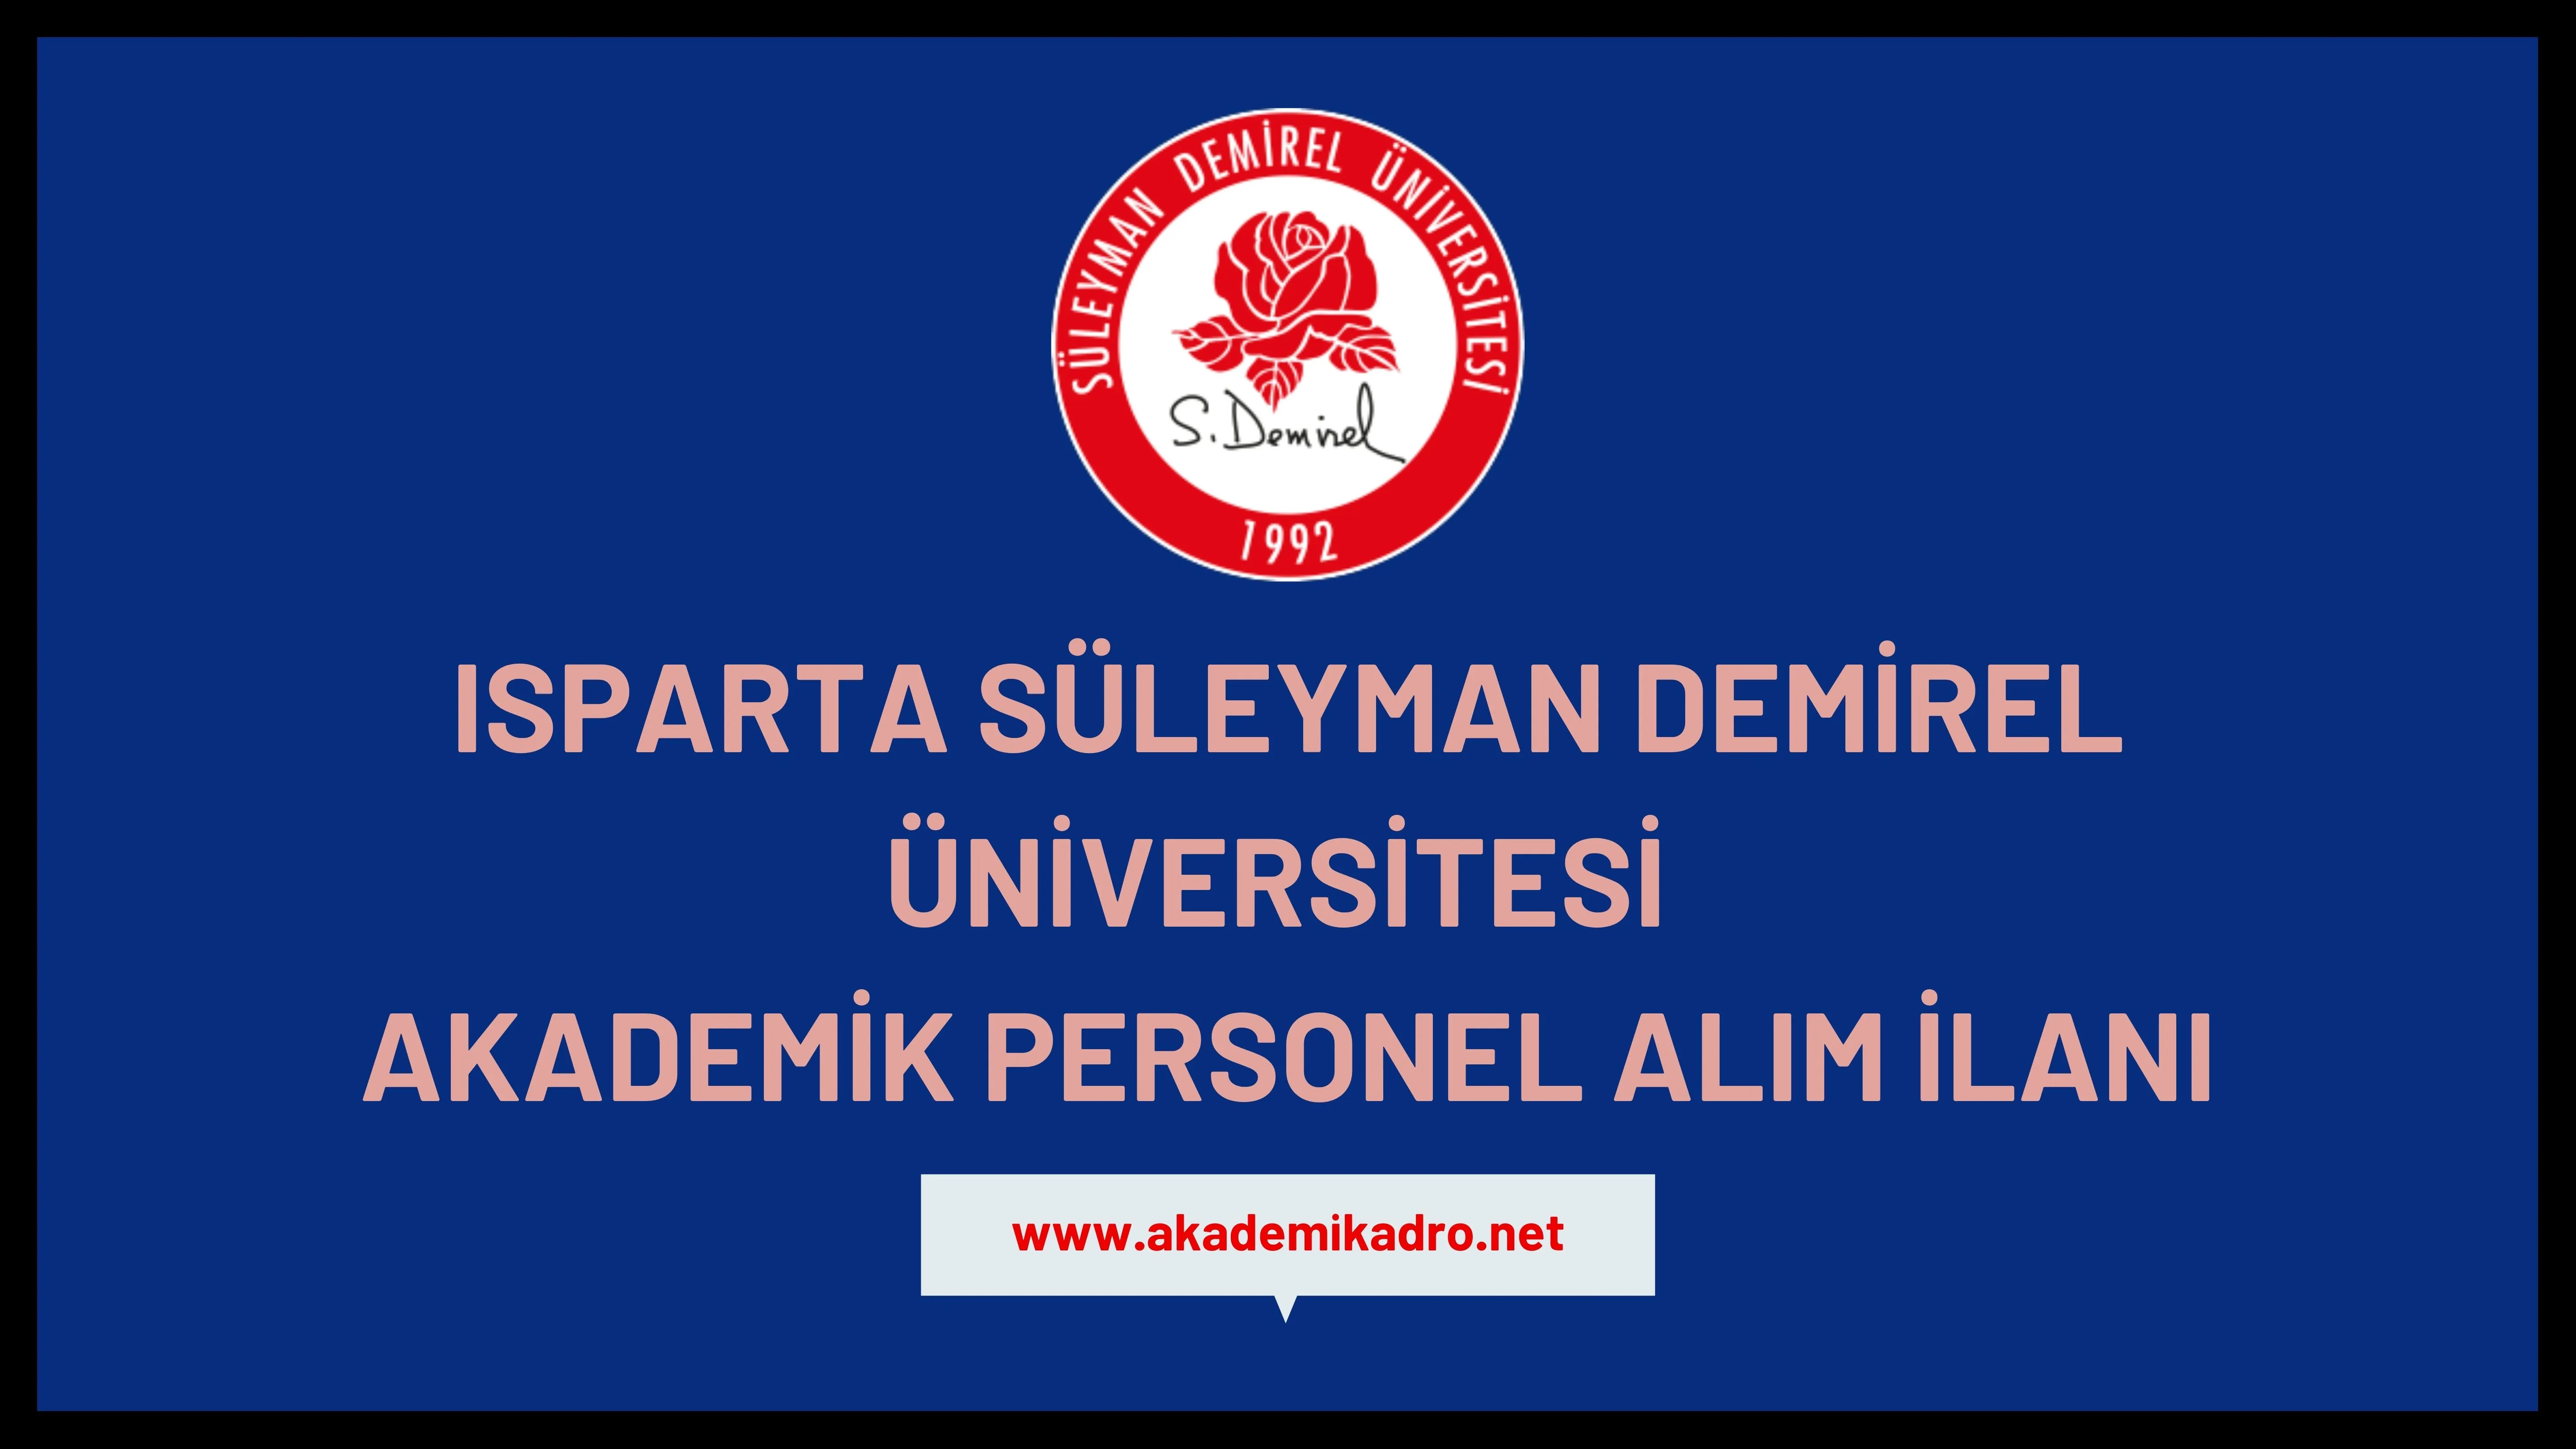 Süleyman Demirel Üniversitesi birçok alandan 22 öğretim üyesi alacak.